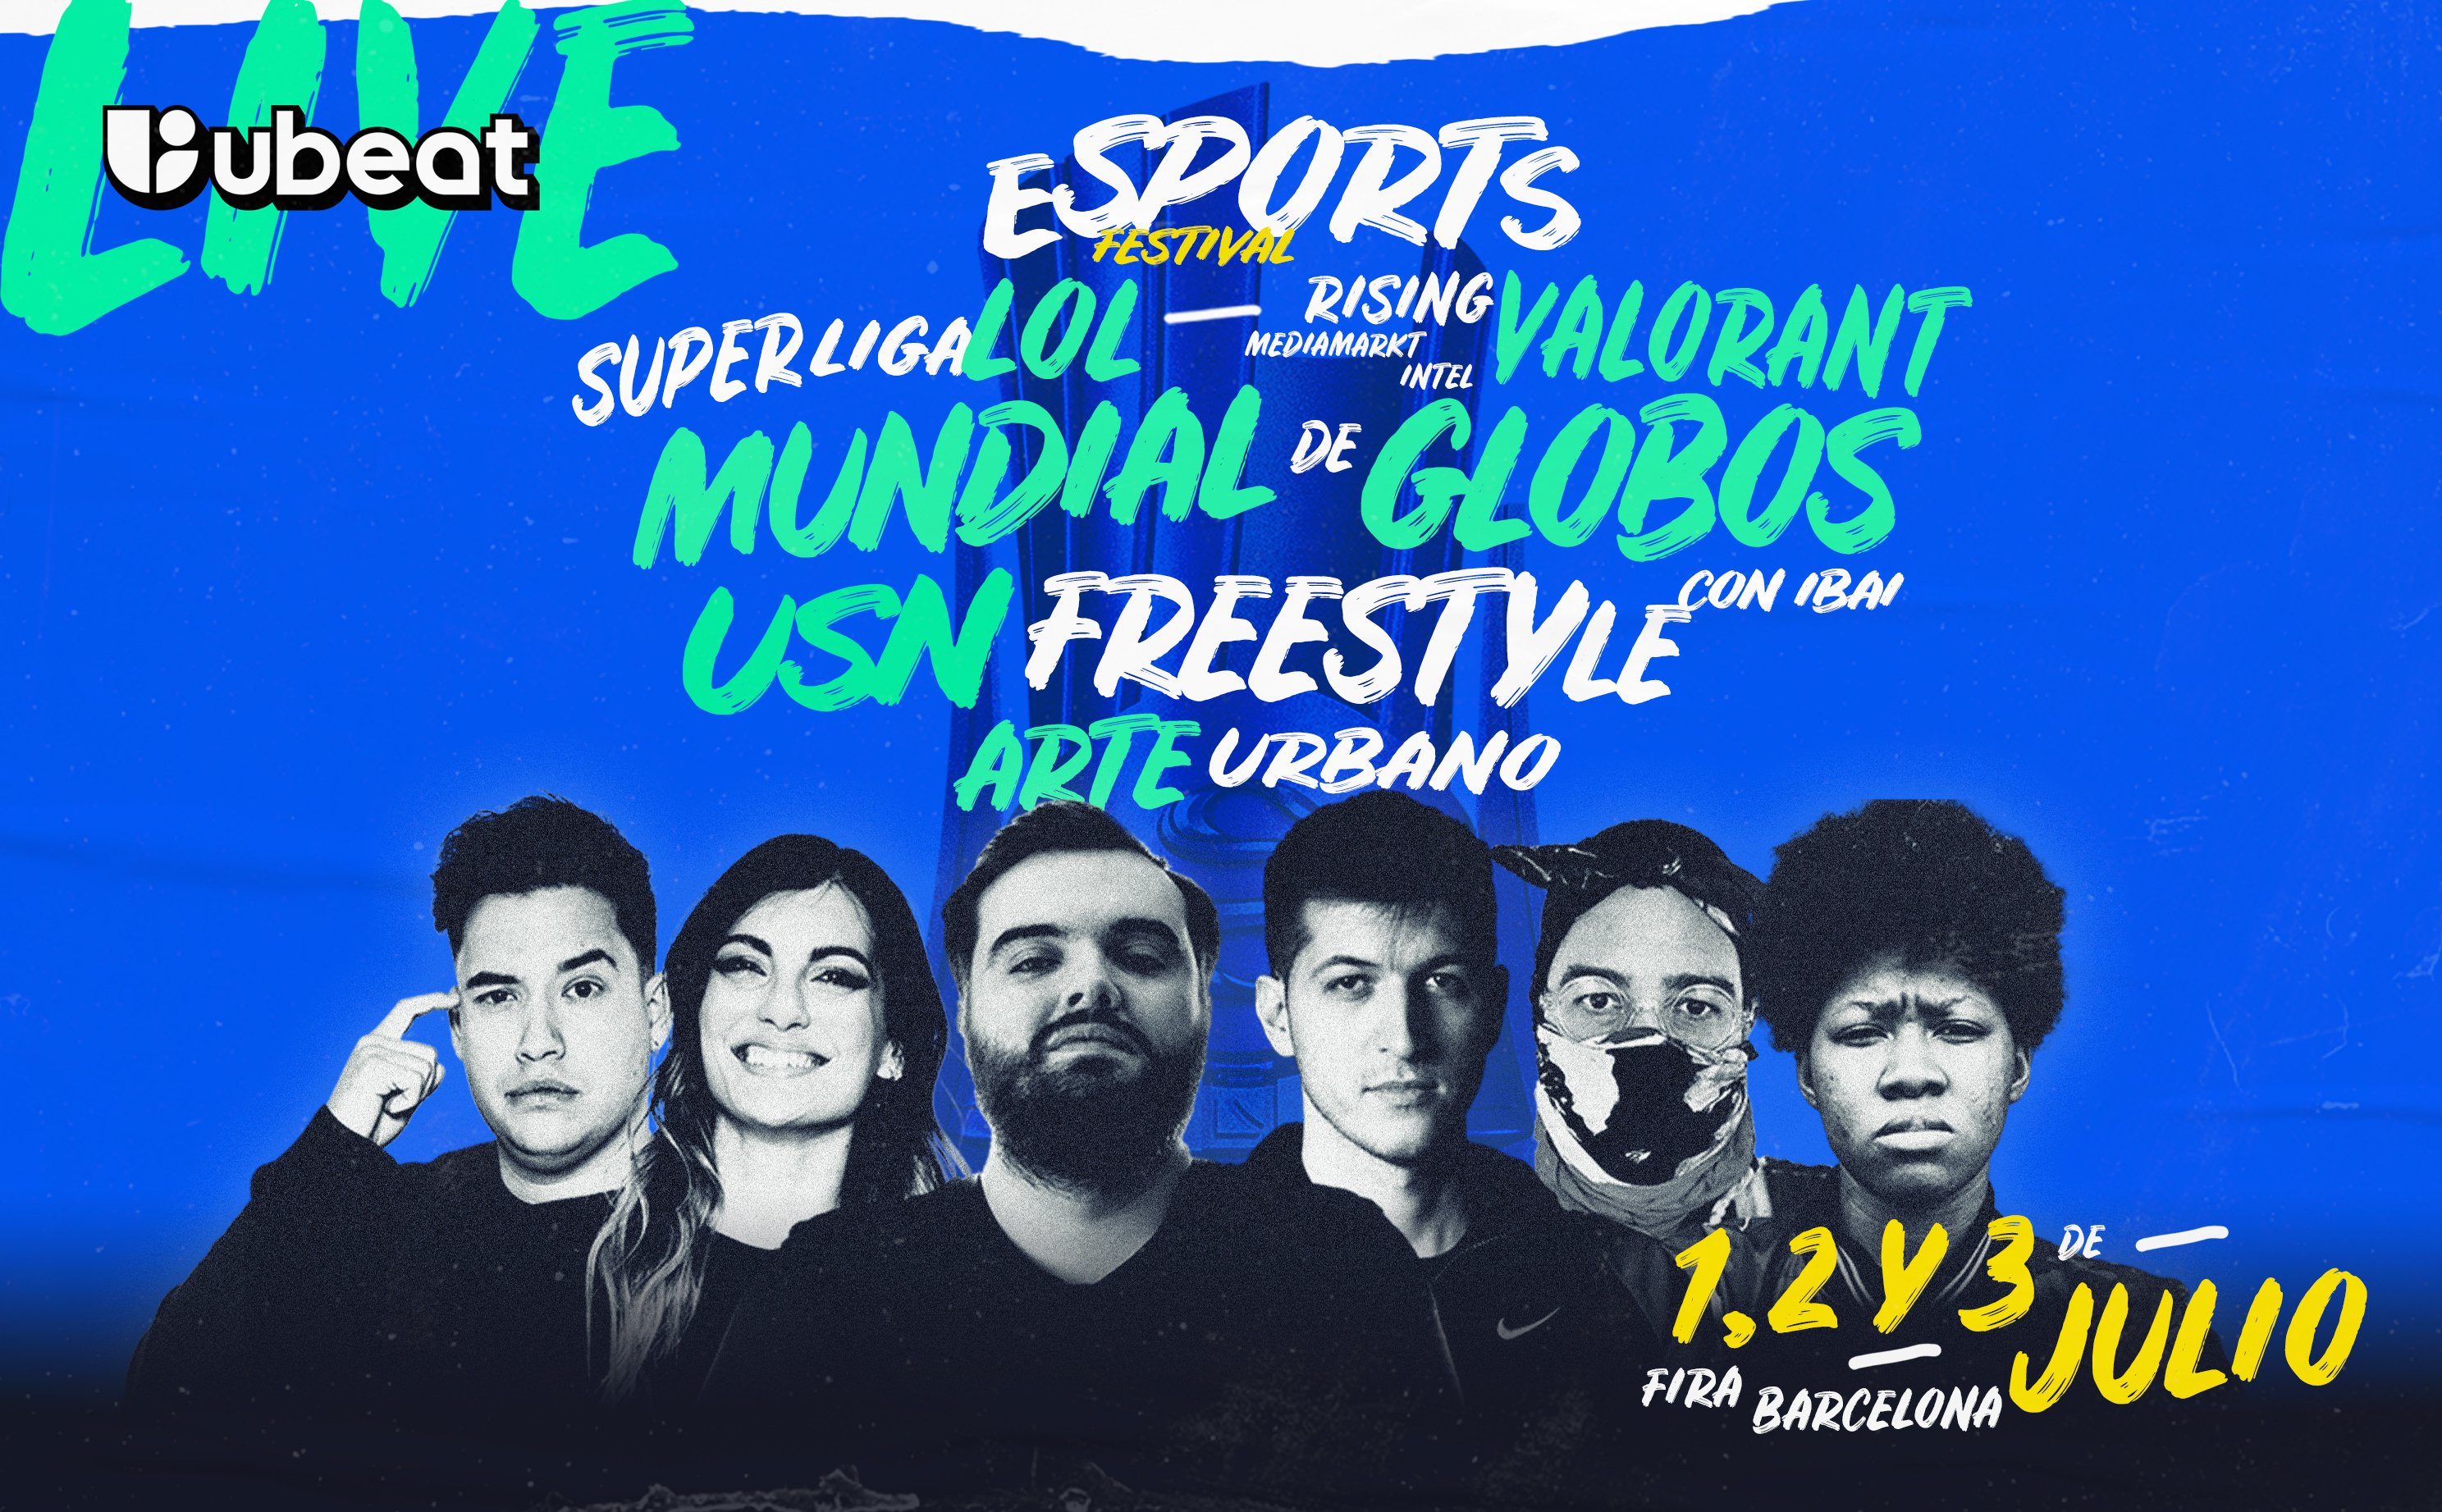 Arranca el Ubeat Live, el nuevo festival de entretenimiento de Barcelona